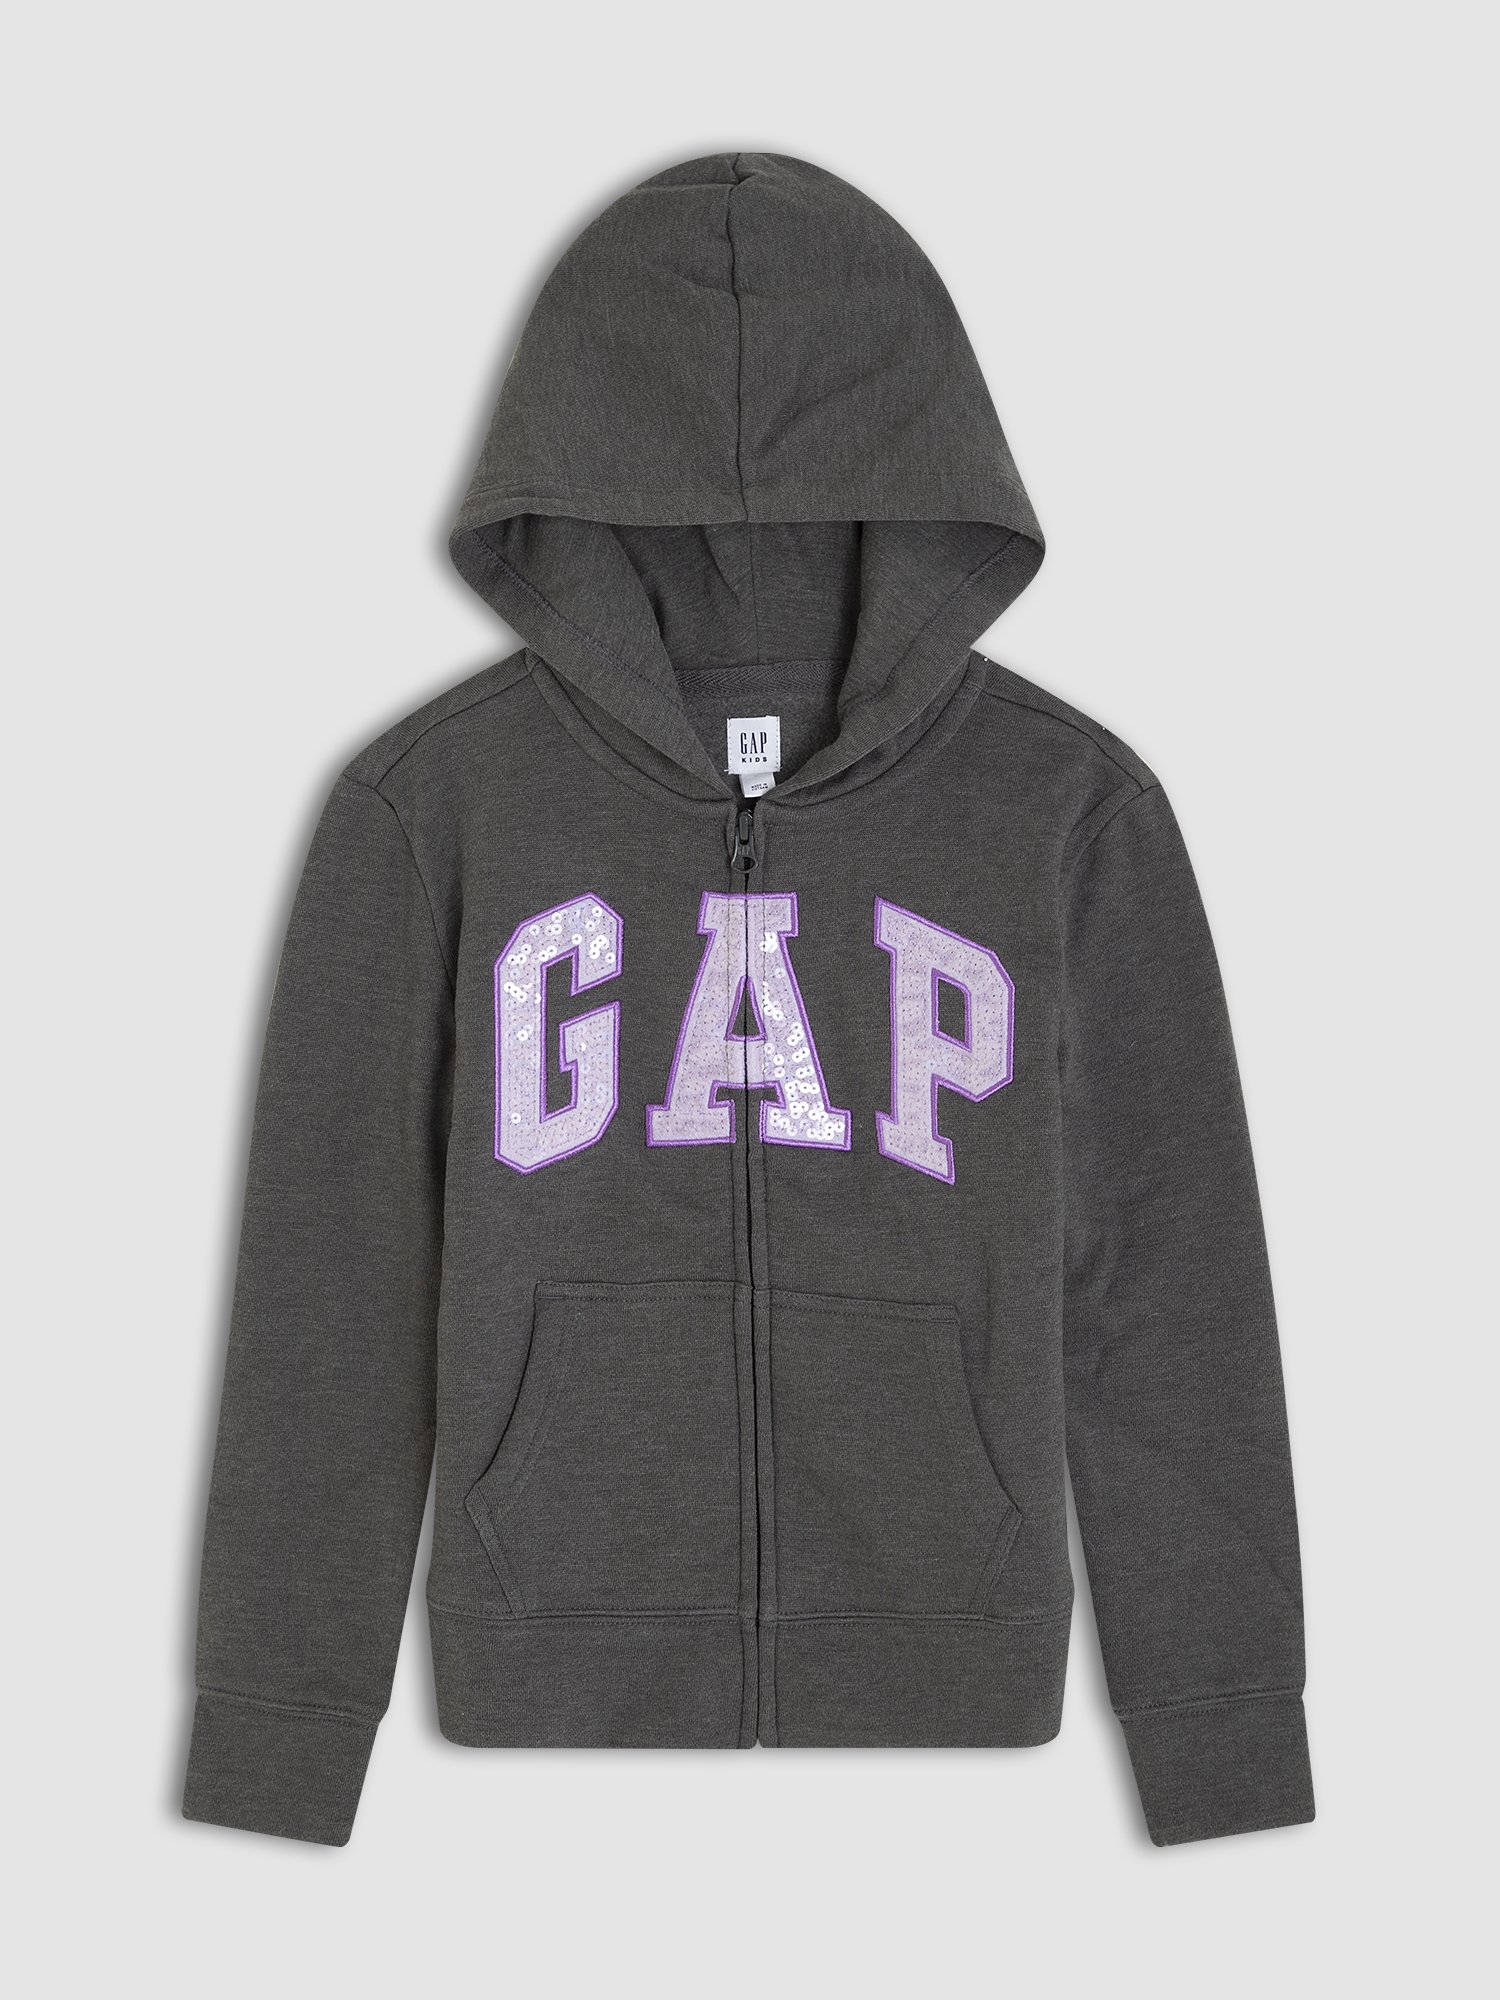 Gap Logo Pullu Kapüşonlu Sweatshirt product image